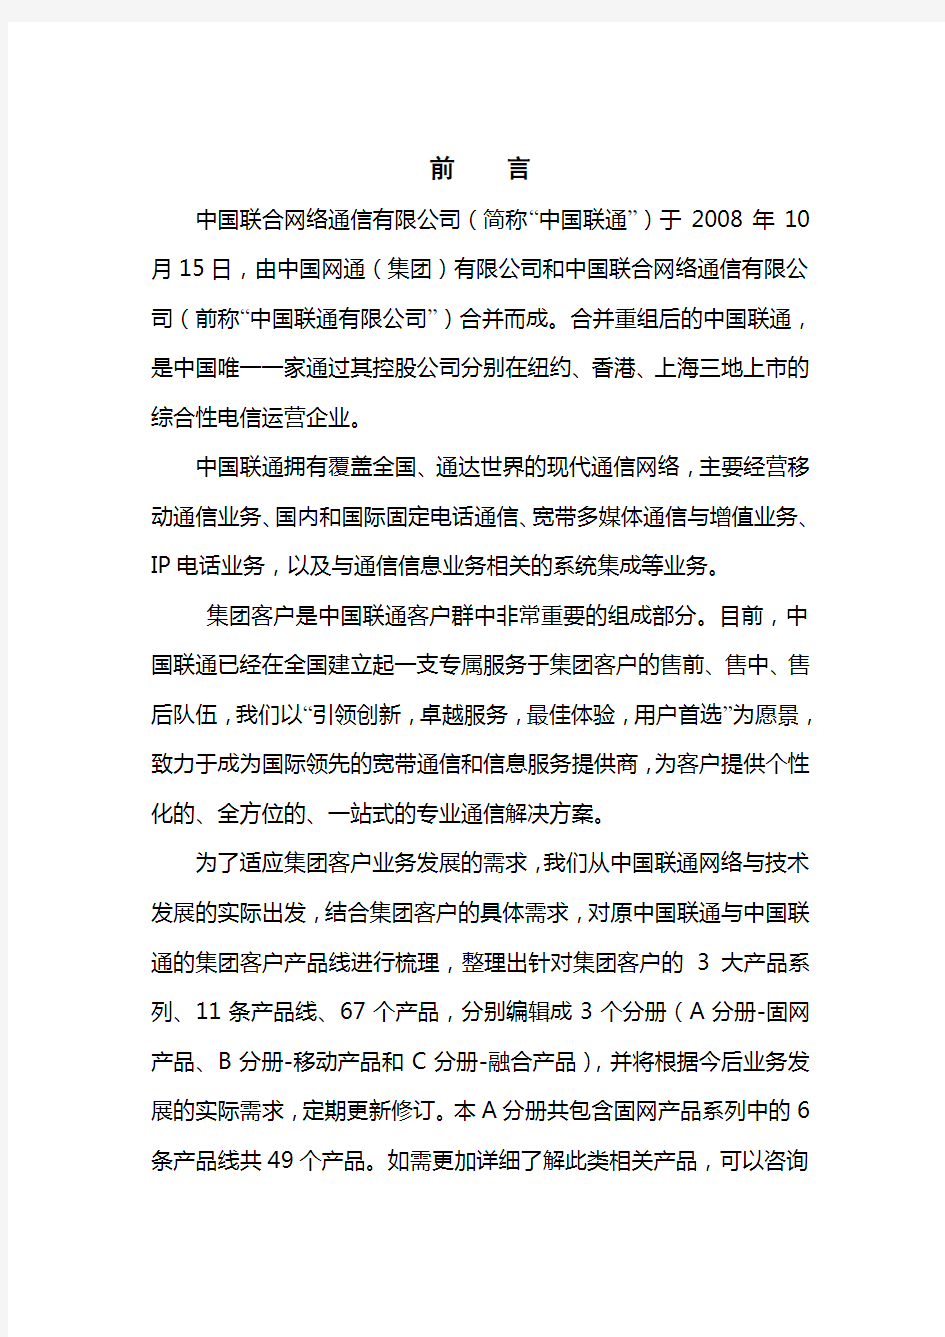 中国联通集团客户产品手册-a分册-固网v1.2